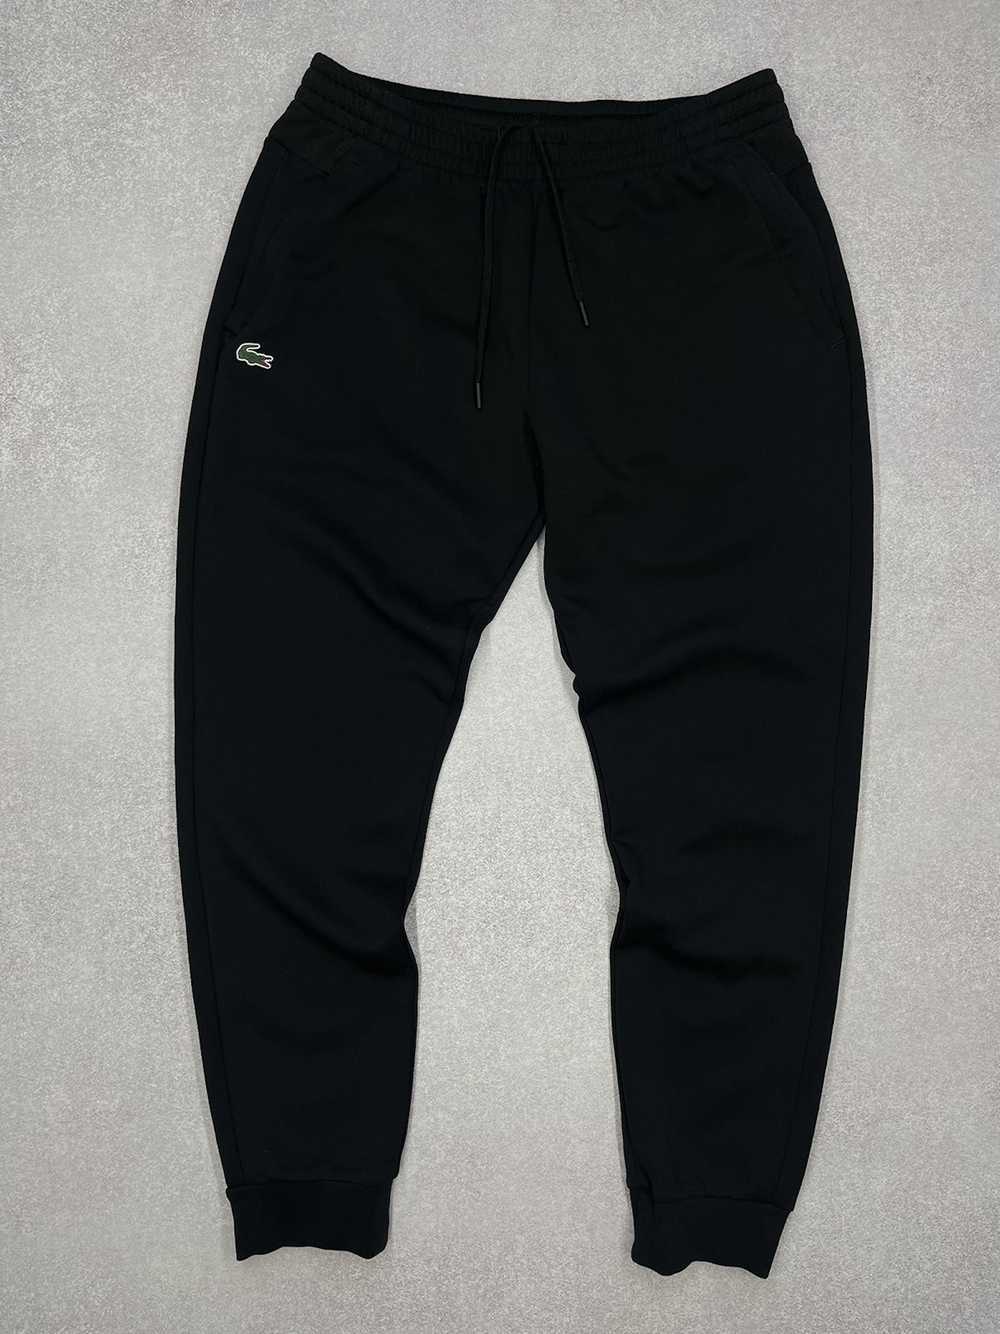 Lacoste × Streetwear Mens Lacoste Sport Black Swe… - image 2